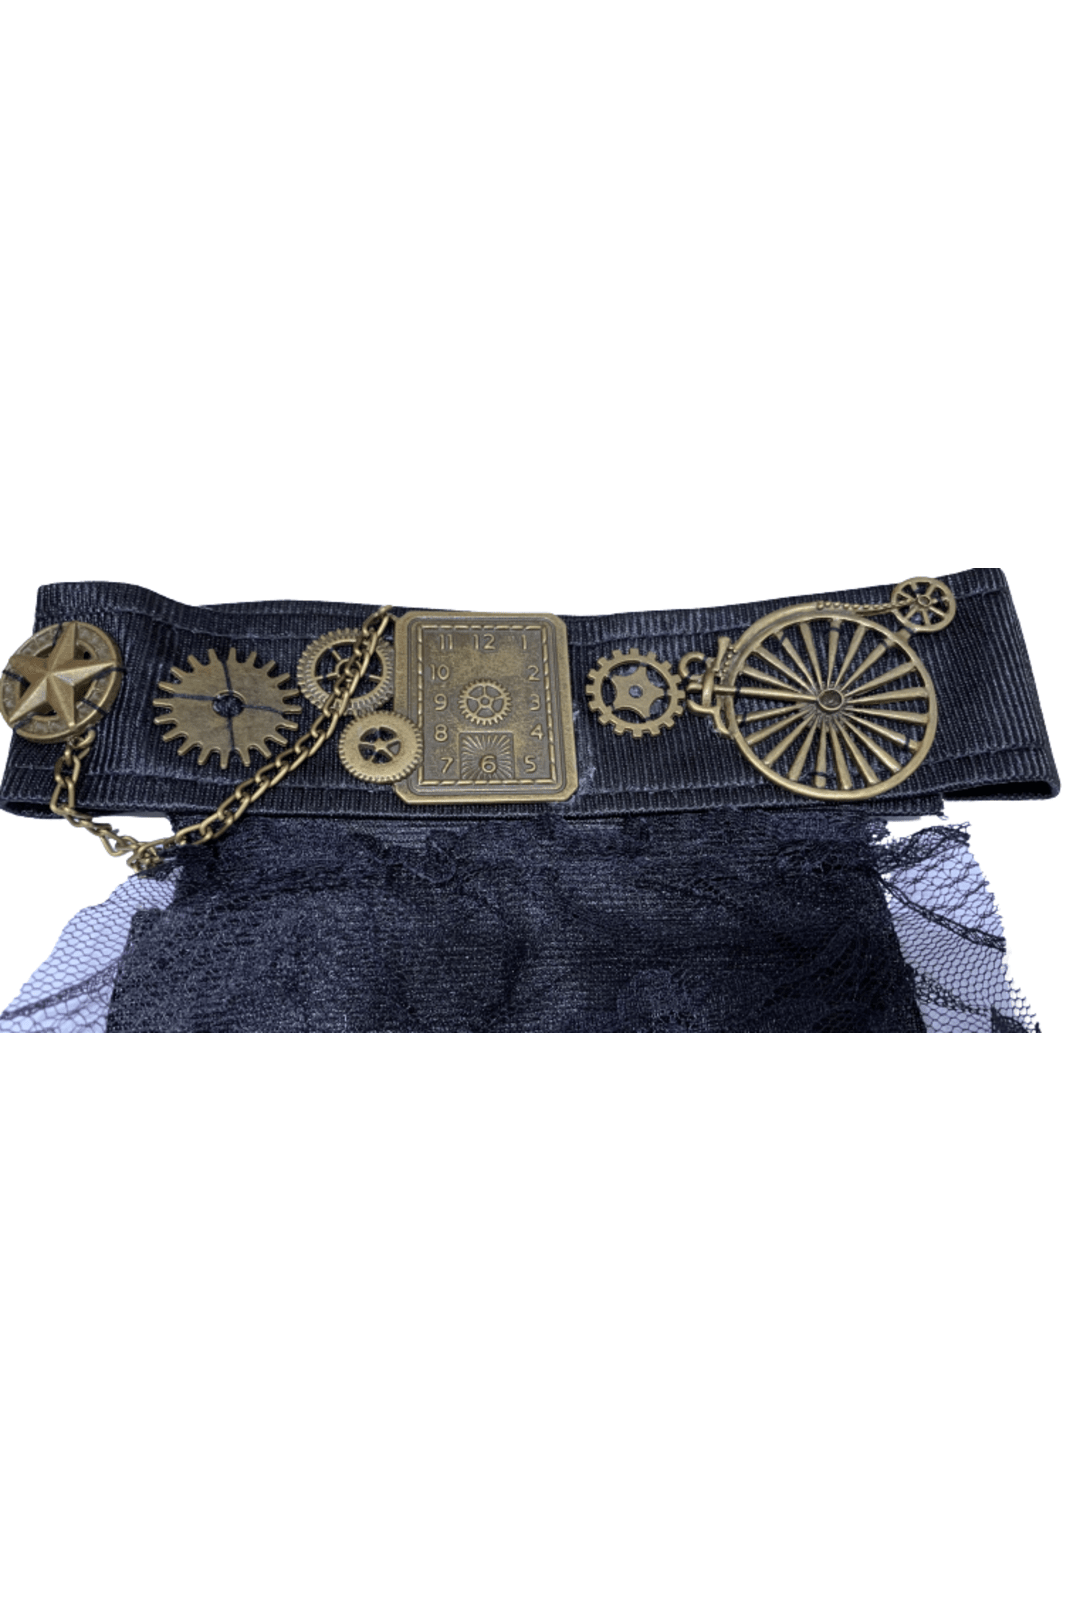 Black Steampunk Jabot Collar with Bronze Clock